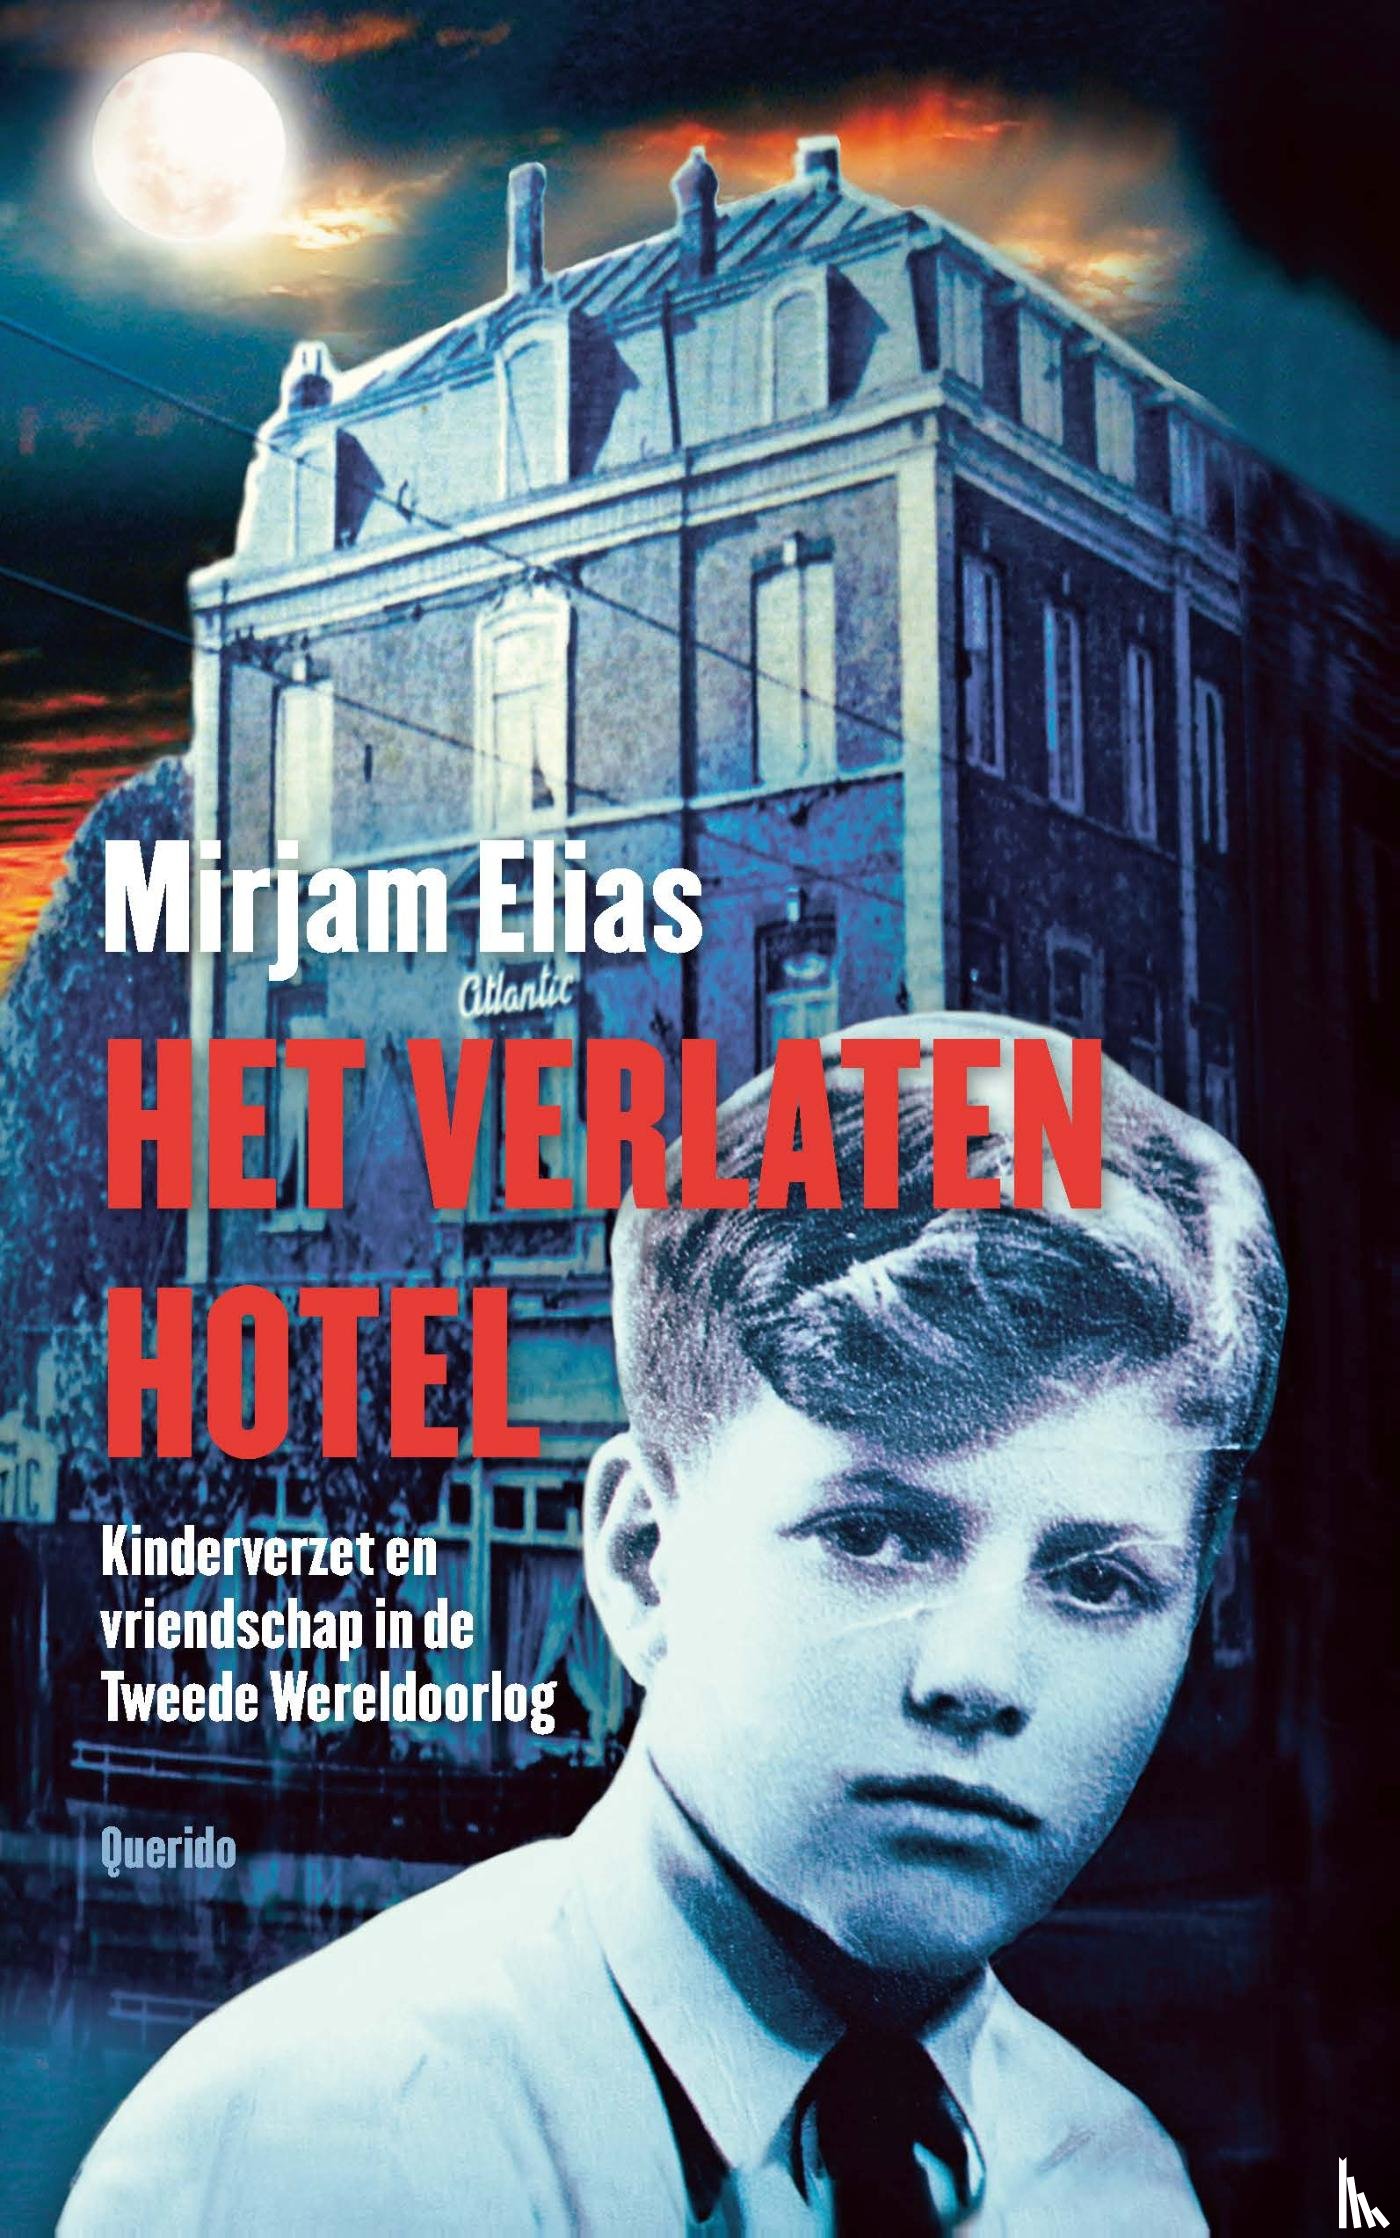 Elias, Mirjam - Het verlaten hotel